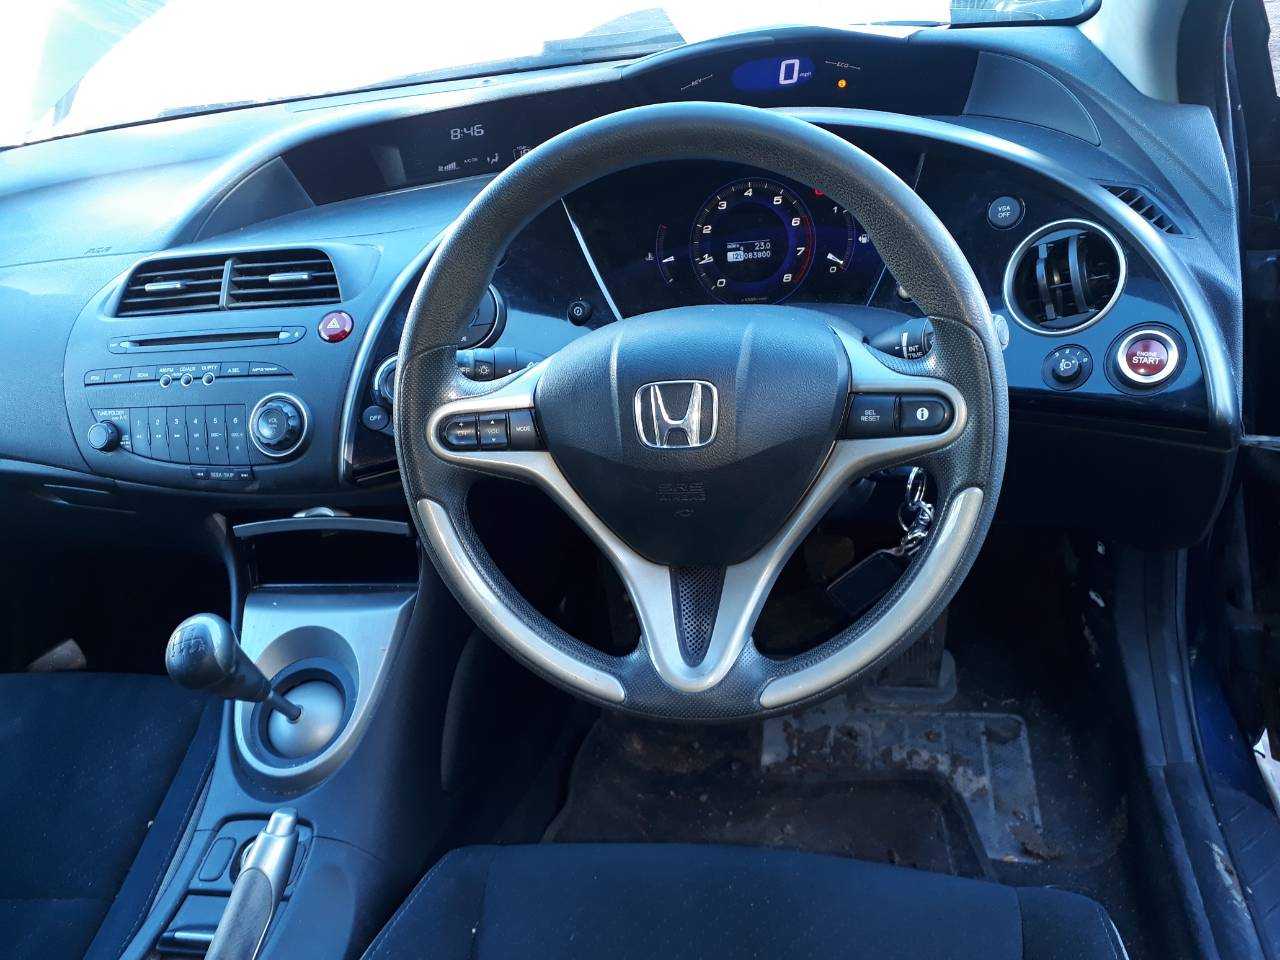 Хонда цивик 4д. обзор седана 8 поколения